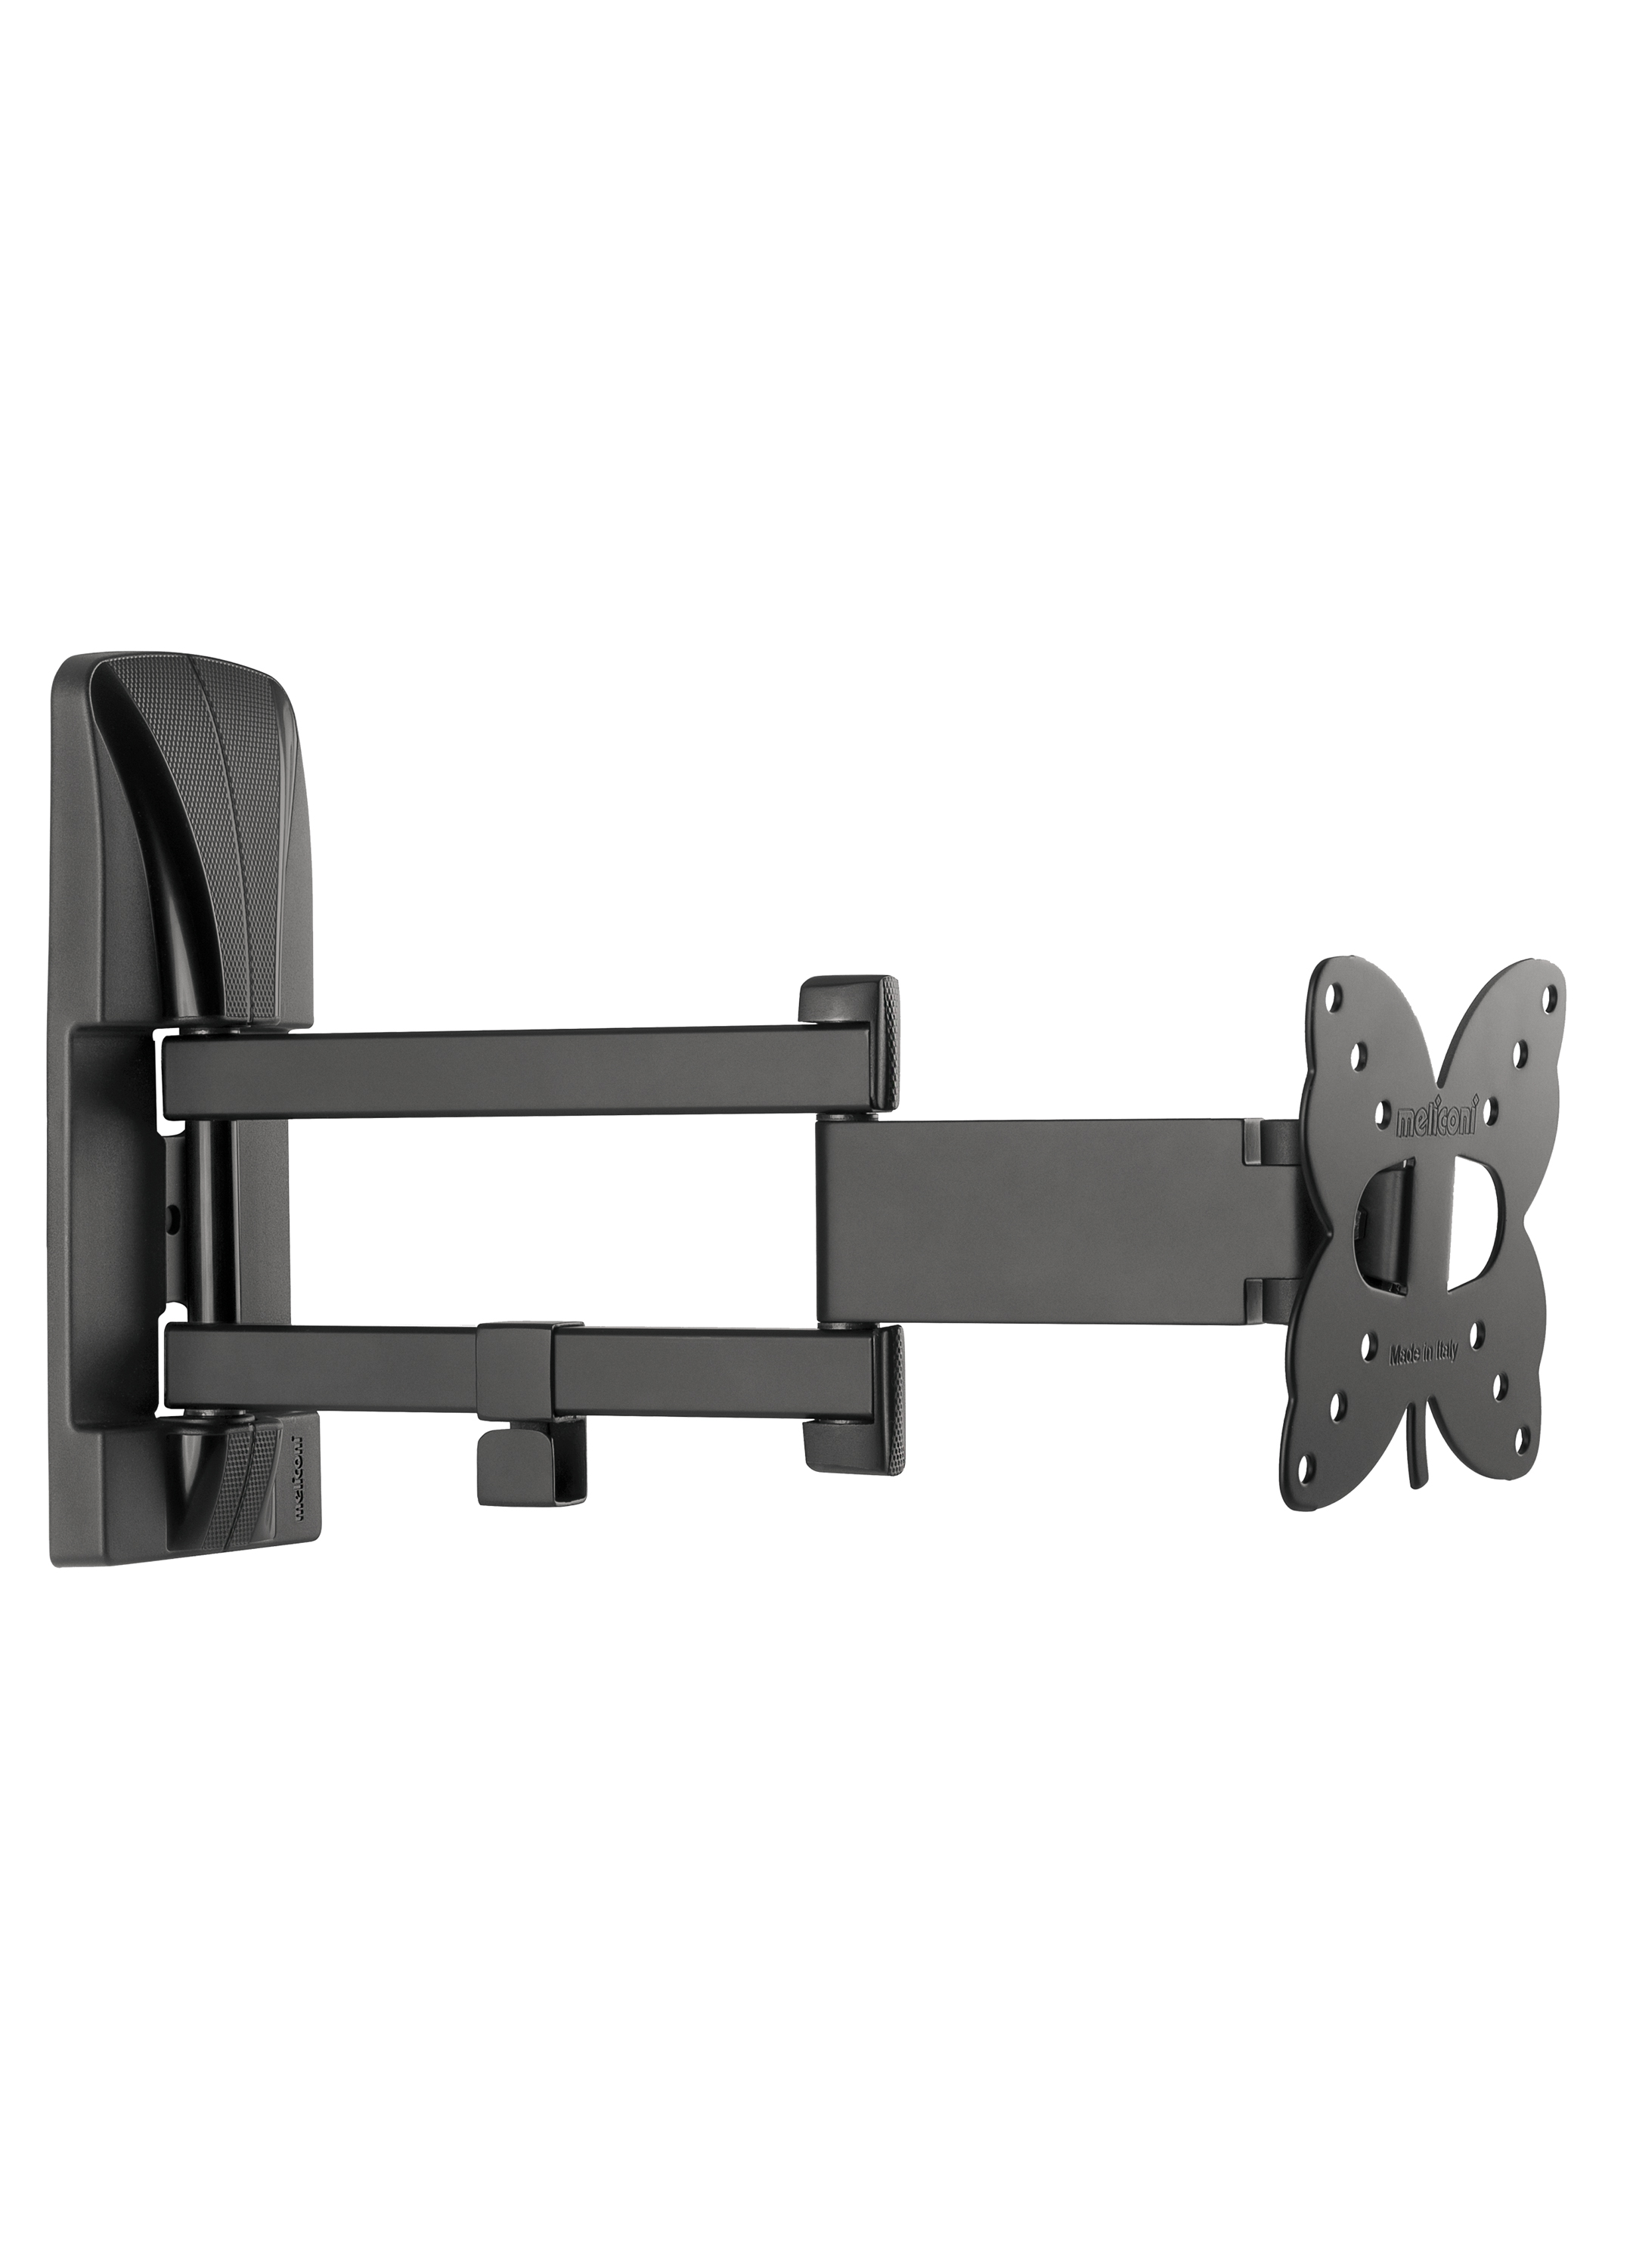 Slimstyle 100 SDR, muurbeugel wendbaar dubbele arm voor tv up to 25 inch, zwart